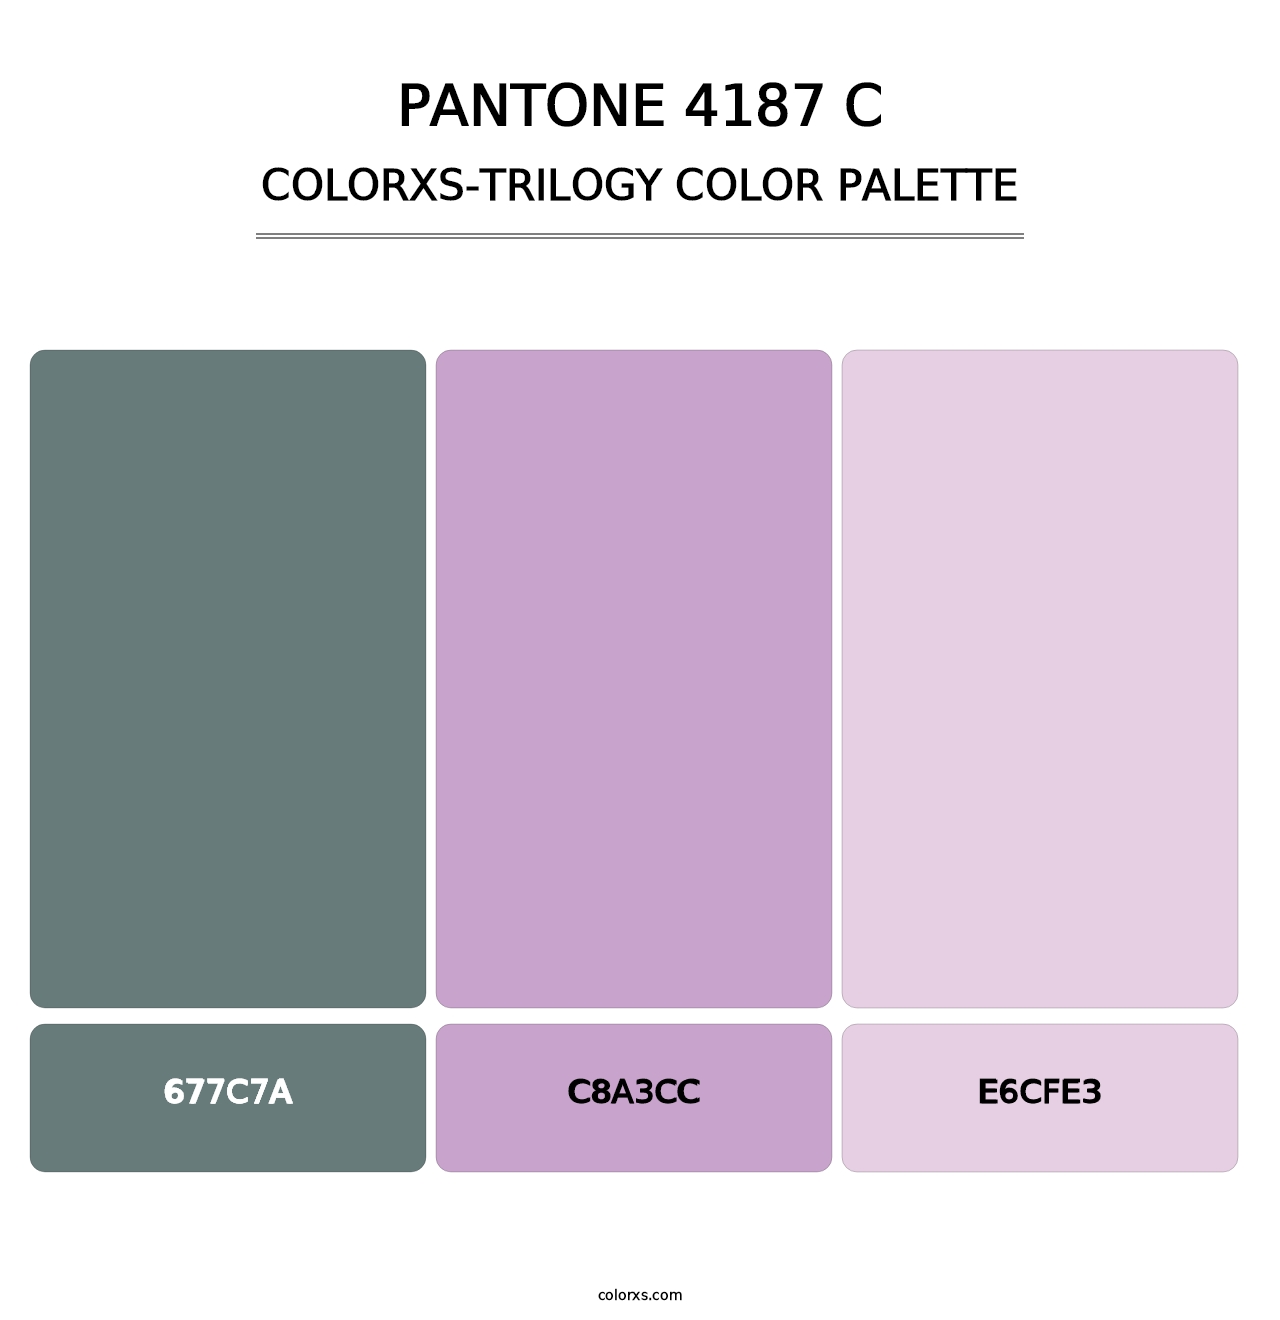 PANTONE 4187 C - Colorxs Trilogy Palette